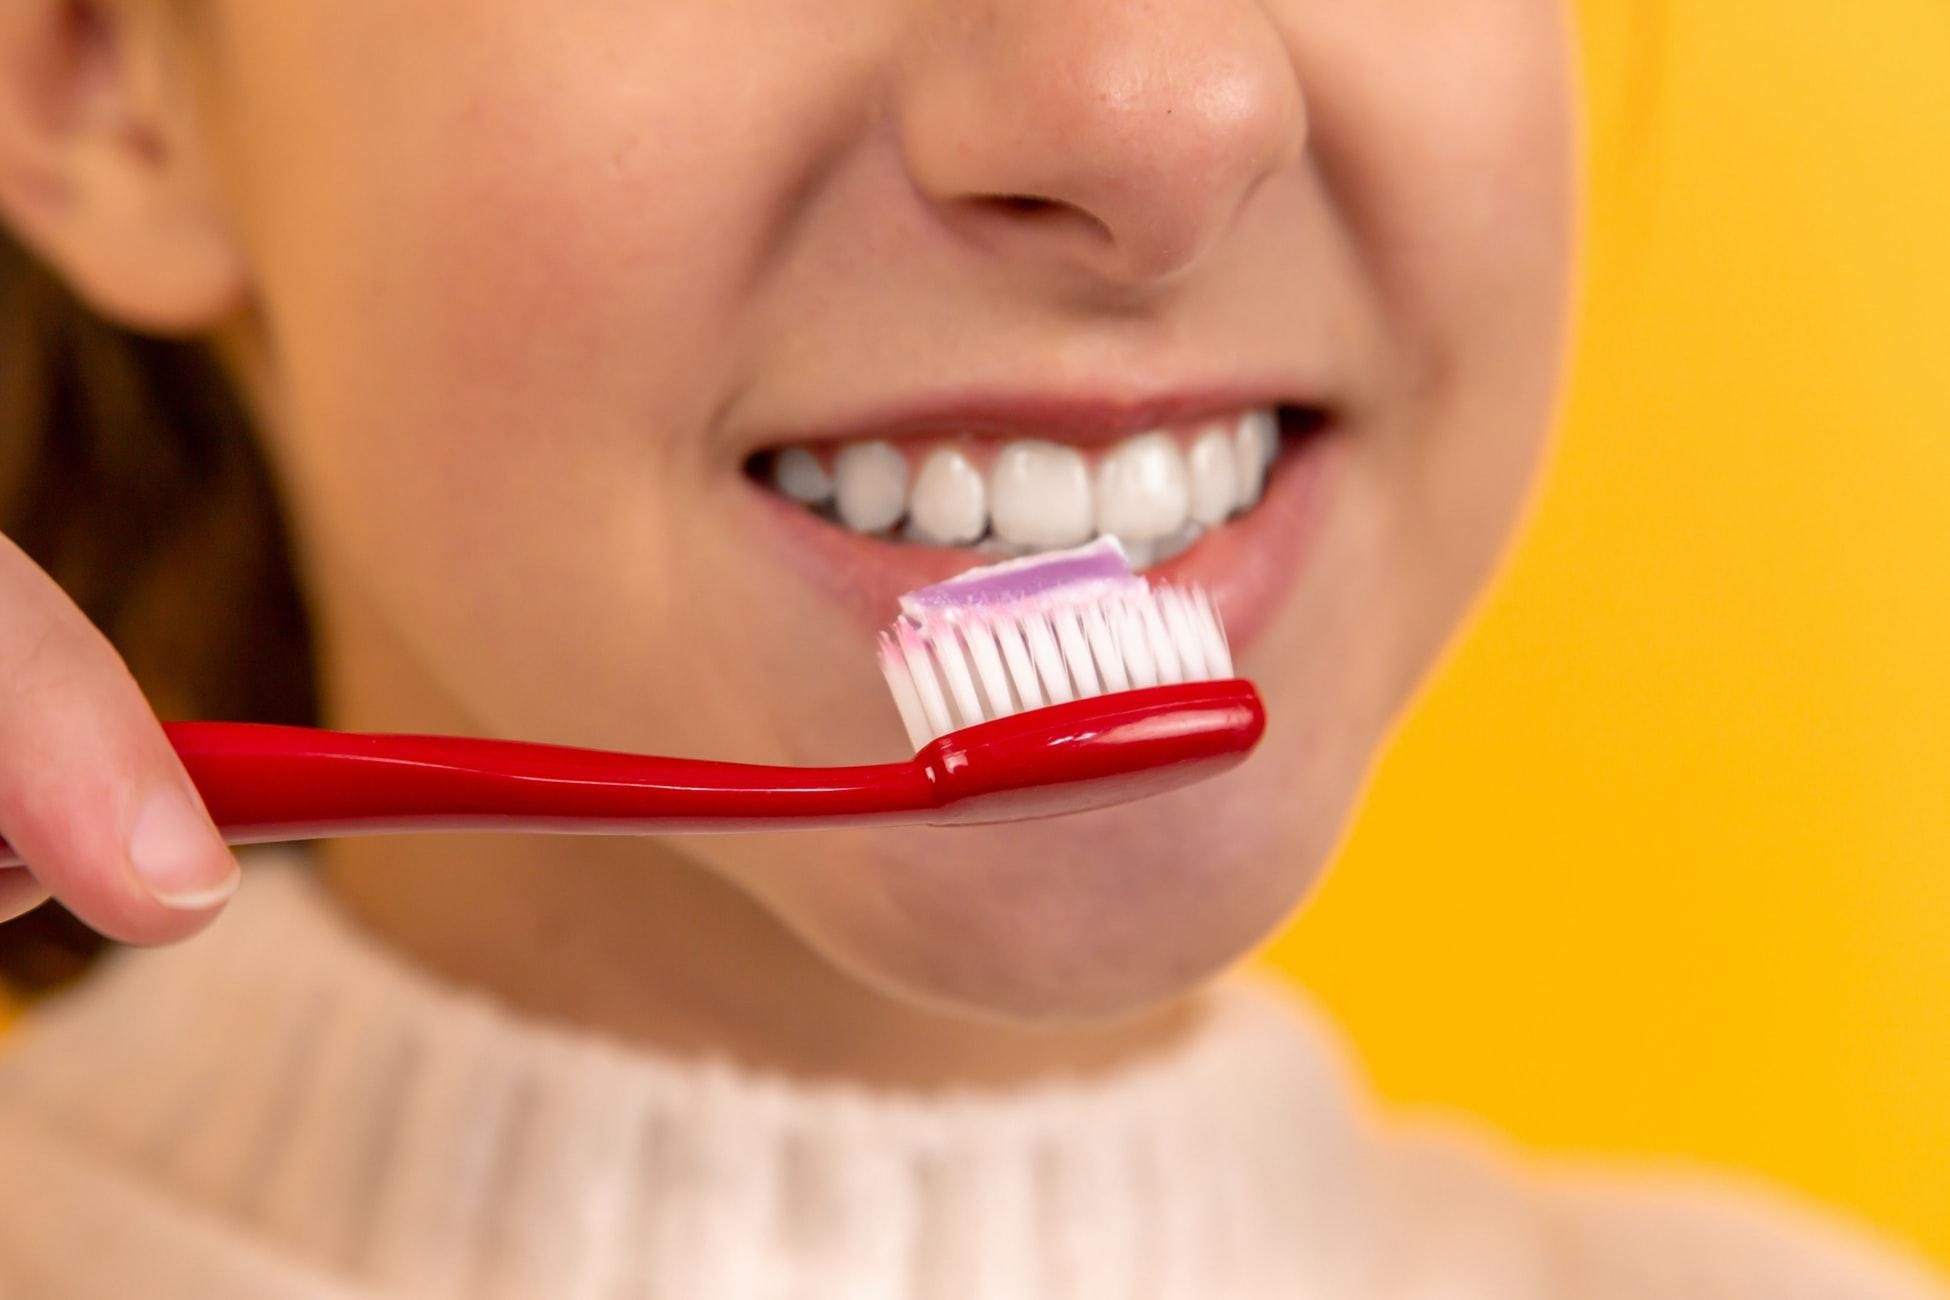 5 секретов здоровых зубов ко Дню рождения зубной щетки